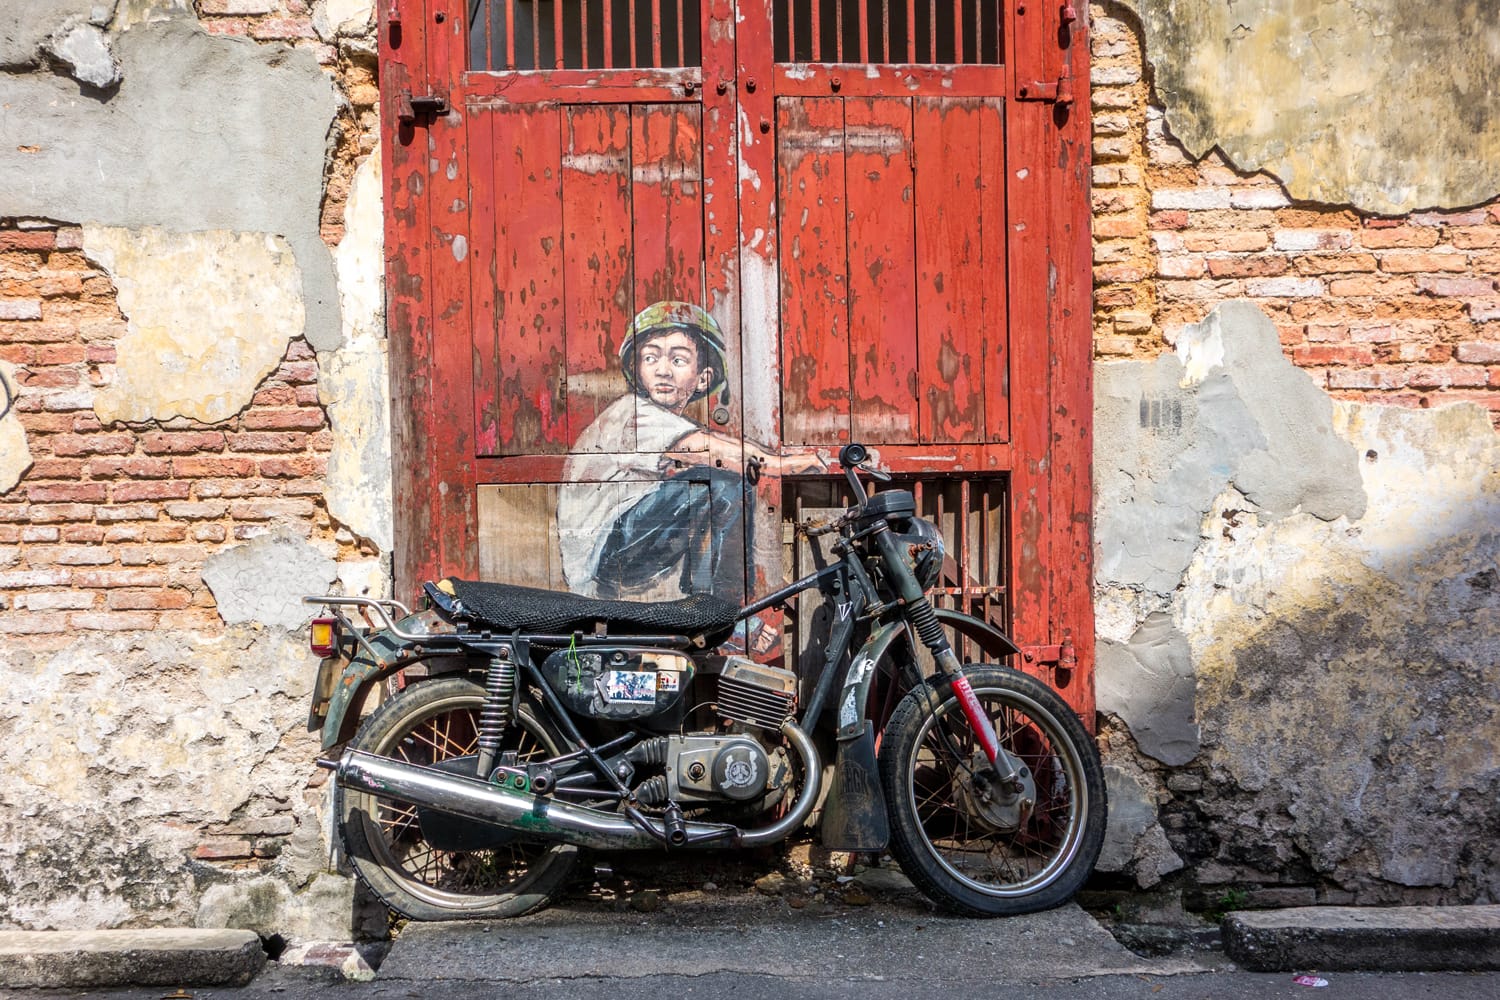 Motorcycle Street Art in Penang